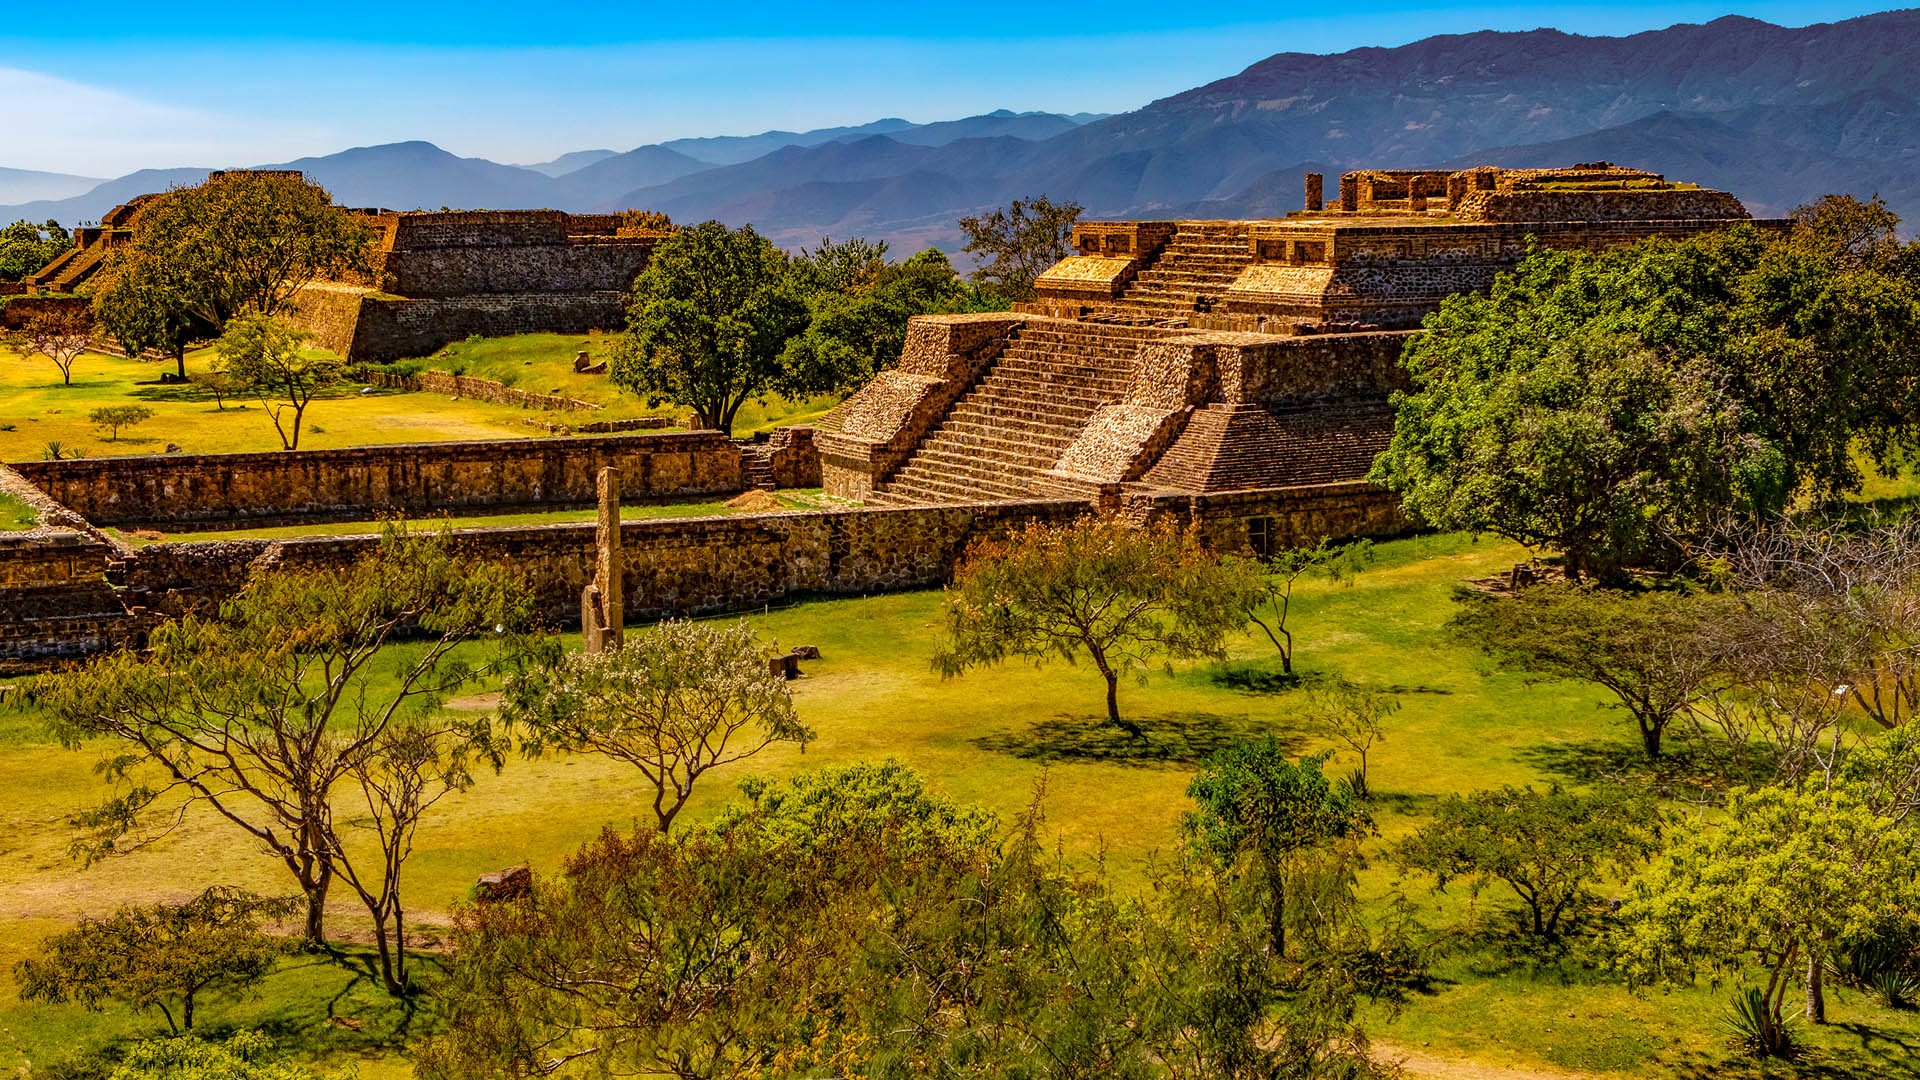 Archaeological site of Monte Albán, Santa Cruz Xoxocotlán, Oaxaca, Mexico |  Windows 10 Spotlight Images